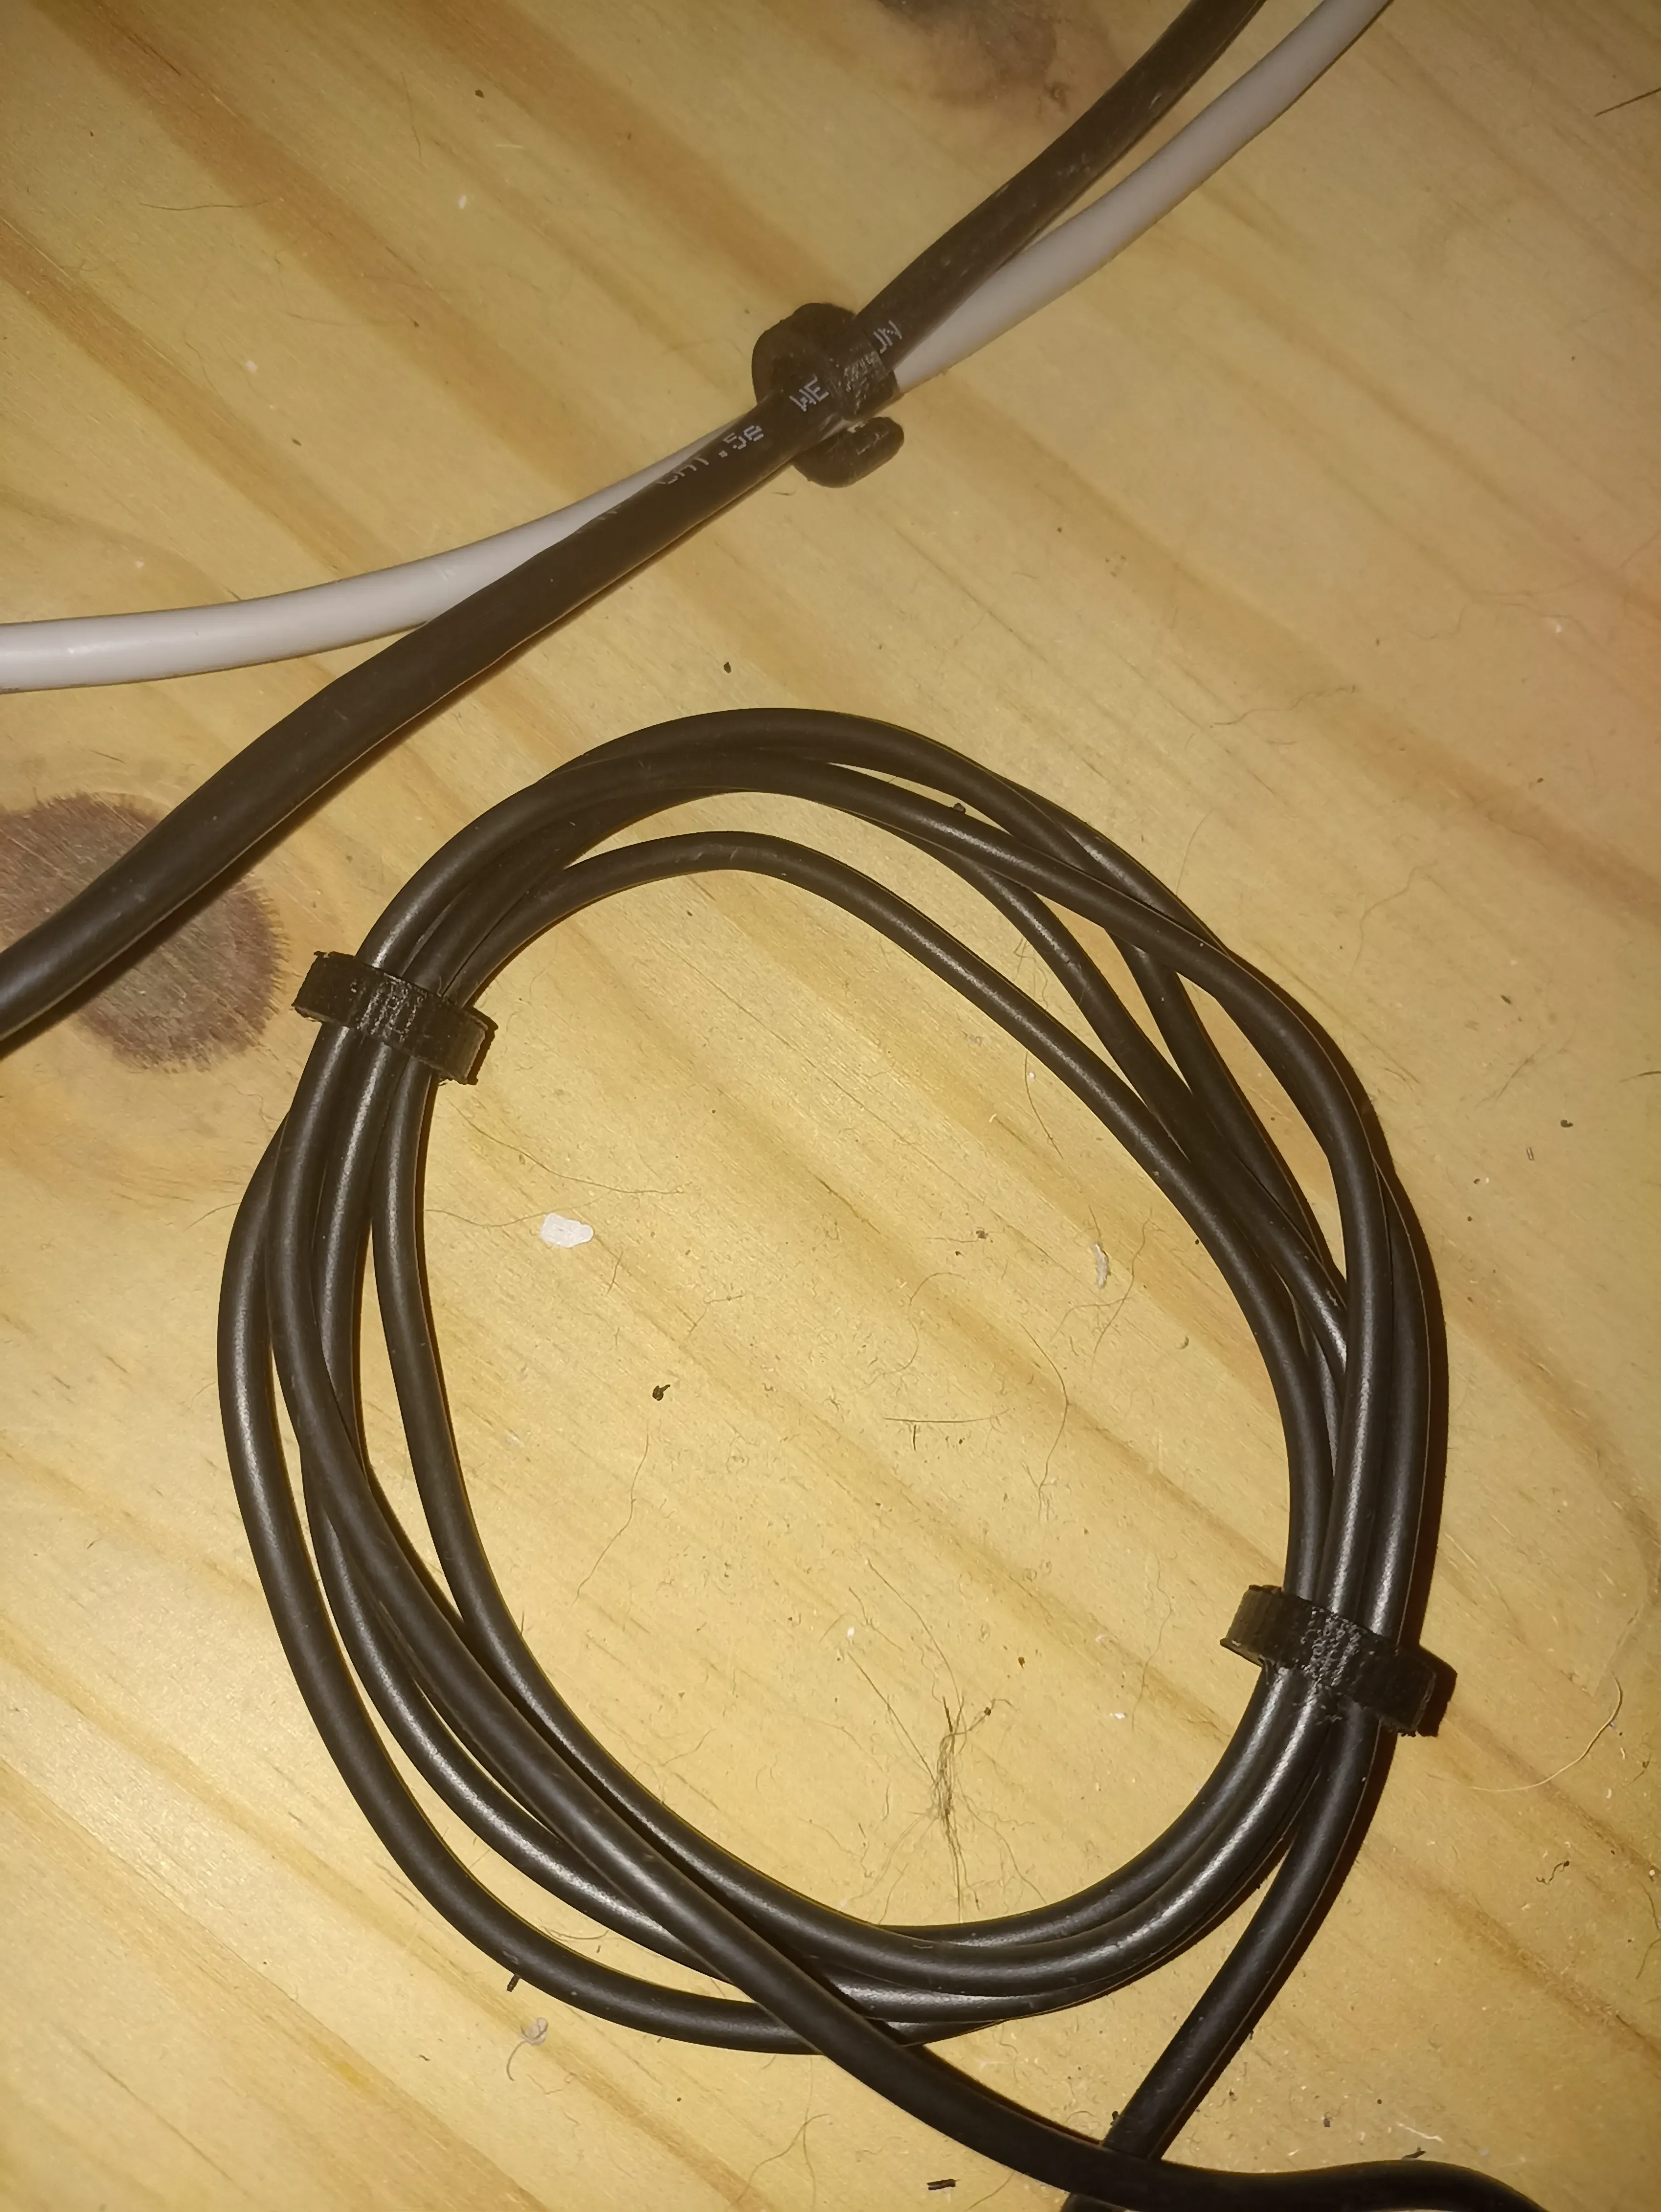 Collier pour câble / Cable tie